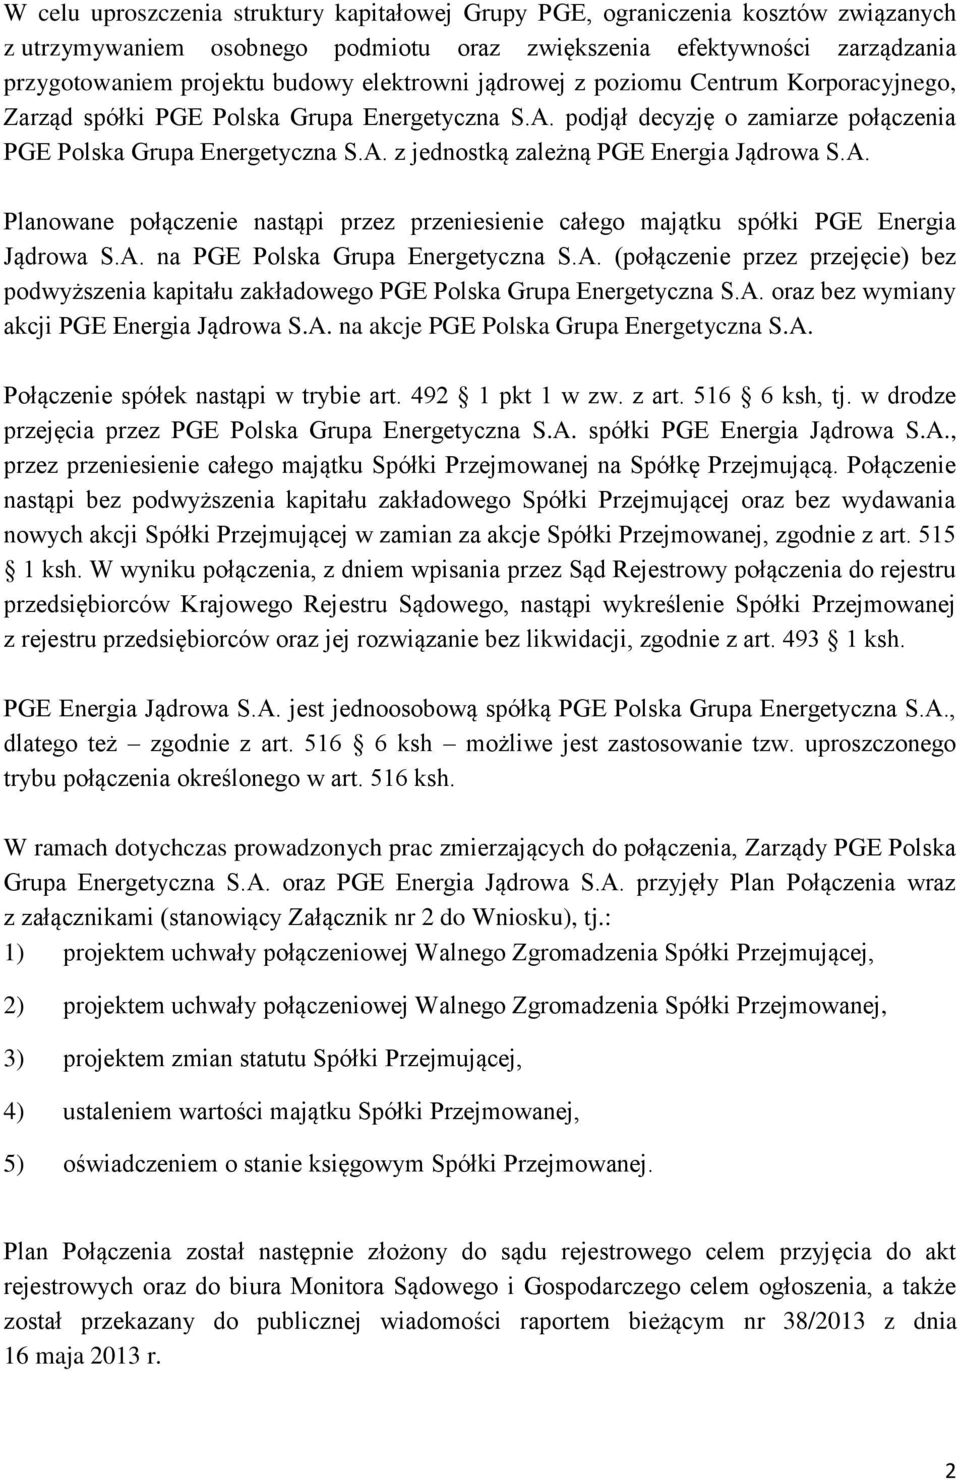 A. Planowane połączenie nastąpi przez przeniesienie całego majątku spółki PGE Energia Jądrowa S.A. na PGE Polska Grupa Energetyczna S.A. (połączenie przez przejęcie) bez podwyższenia kapitału zakładowego PGE Polska Grupa Energetyczna S.